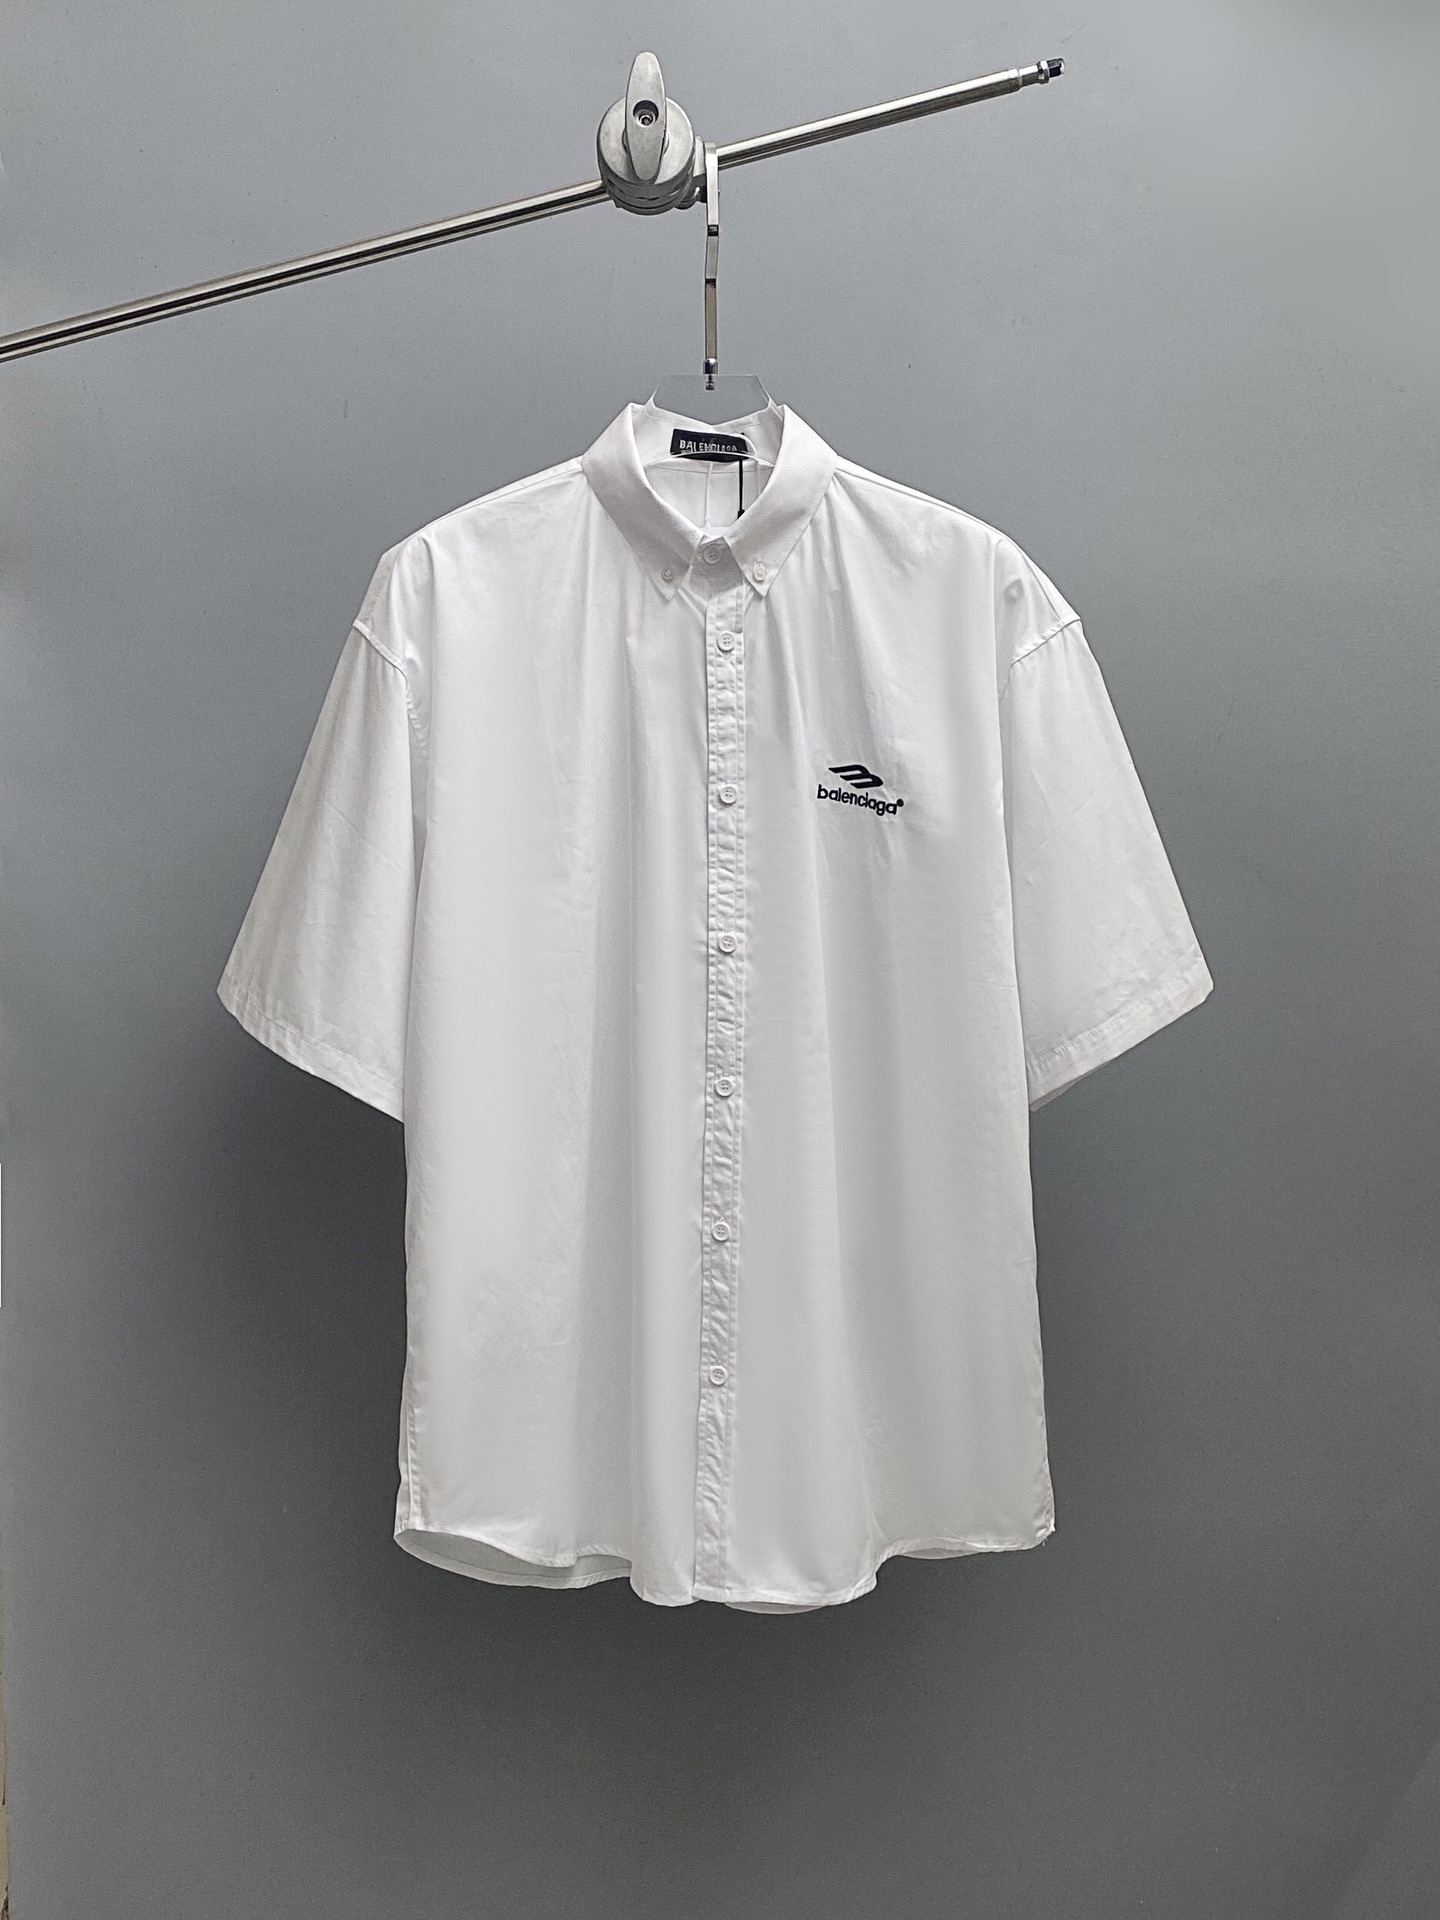 バレンシアガtシャツ 値段偽物 シャツ トップス カジュアル 柔らかい 半袖 ゆったり 男女兼用 ホワイト_1